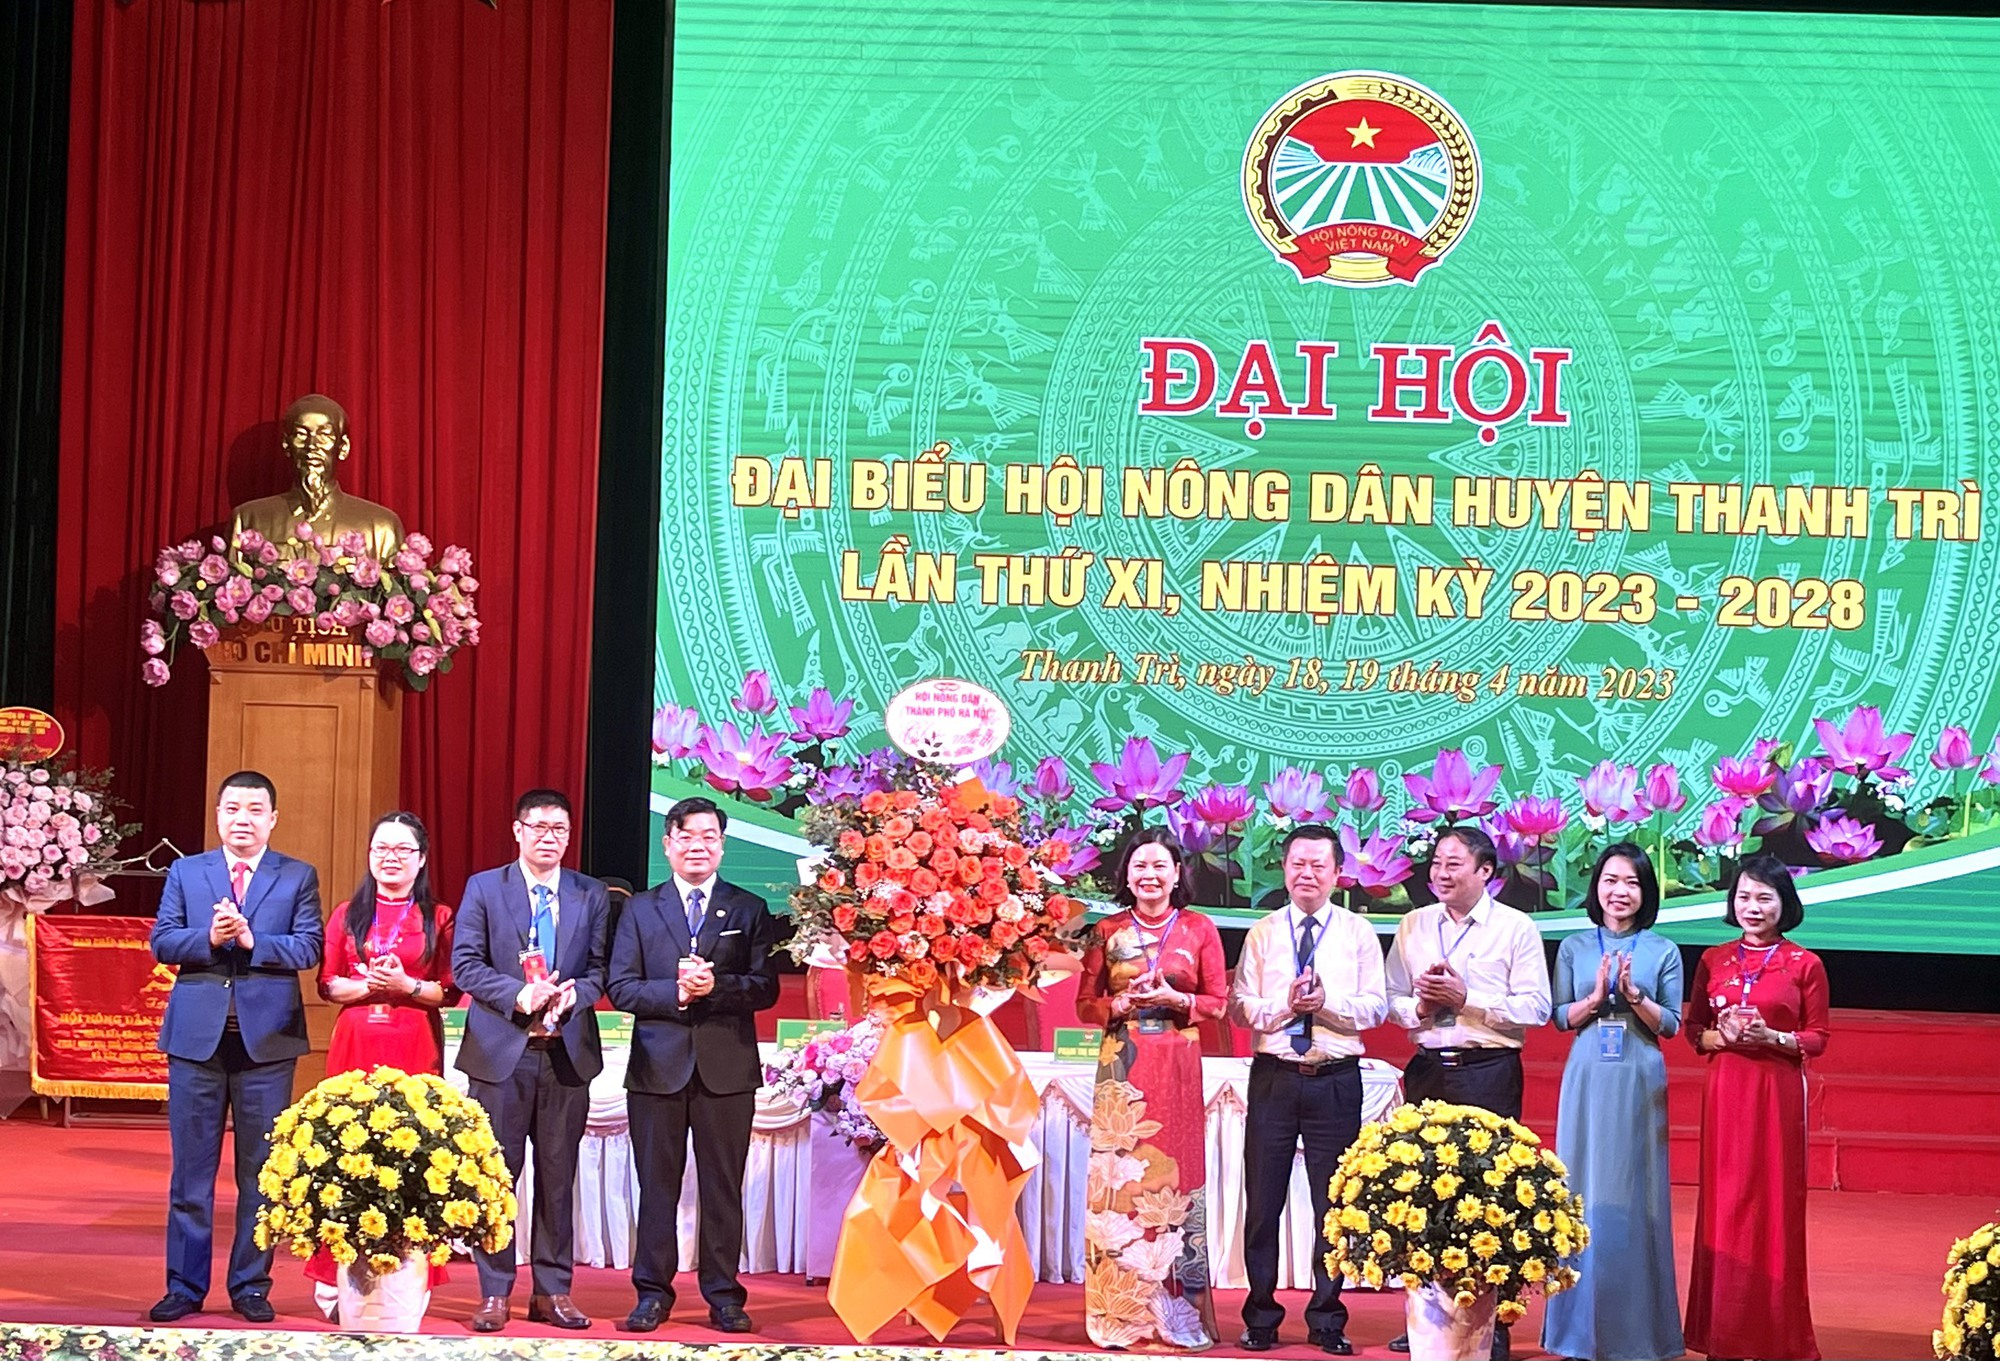 Hà Nội: Ông Nguyễn Sỹ Thành được bầu tái đắc cử chức Chủ tịch Hội Nông dân huyện Thanh Trì - Ảnh 1.